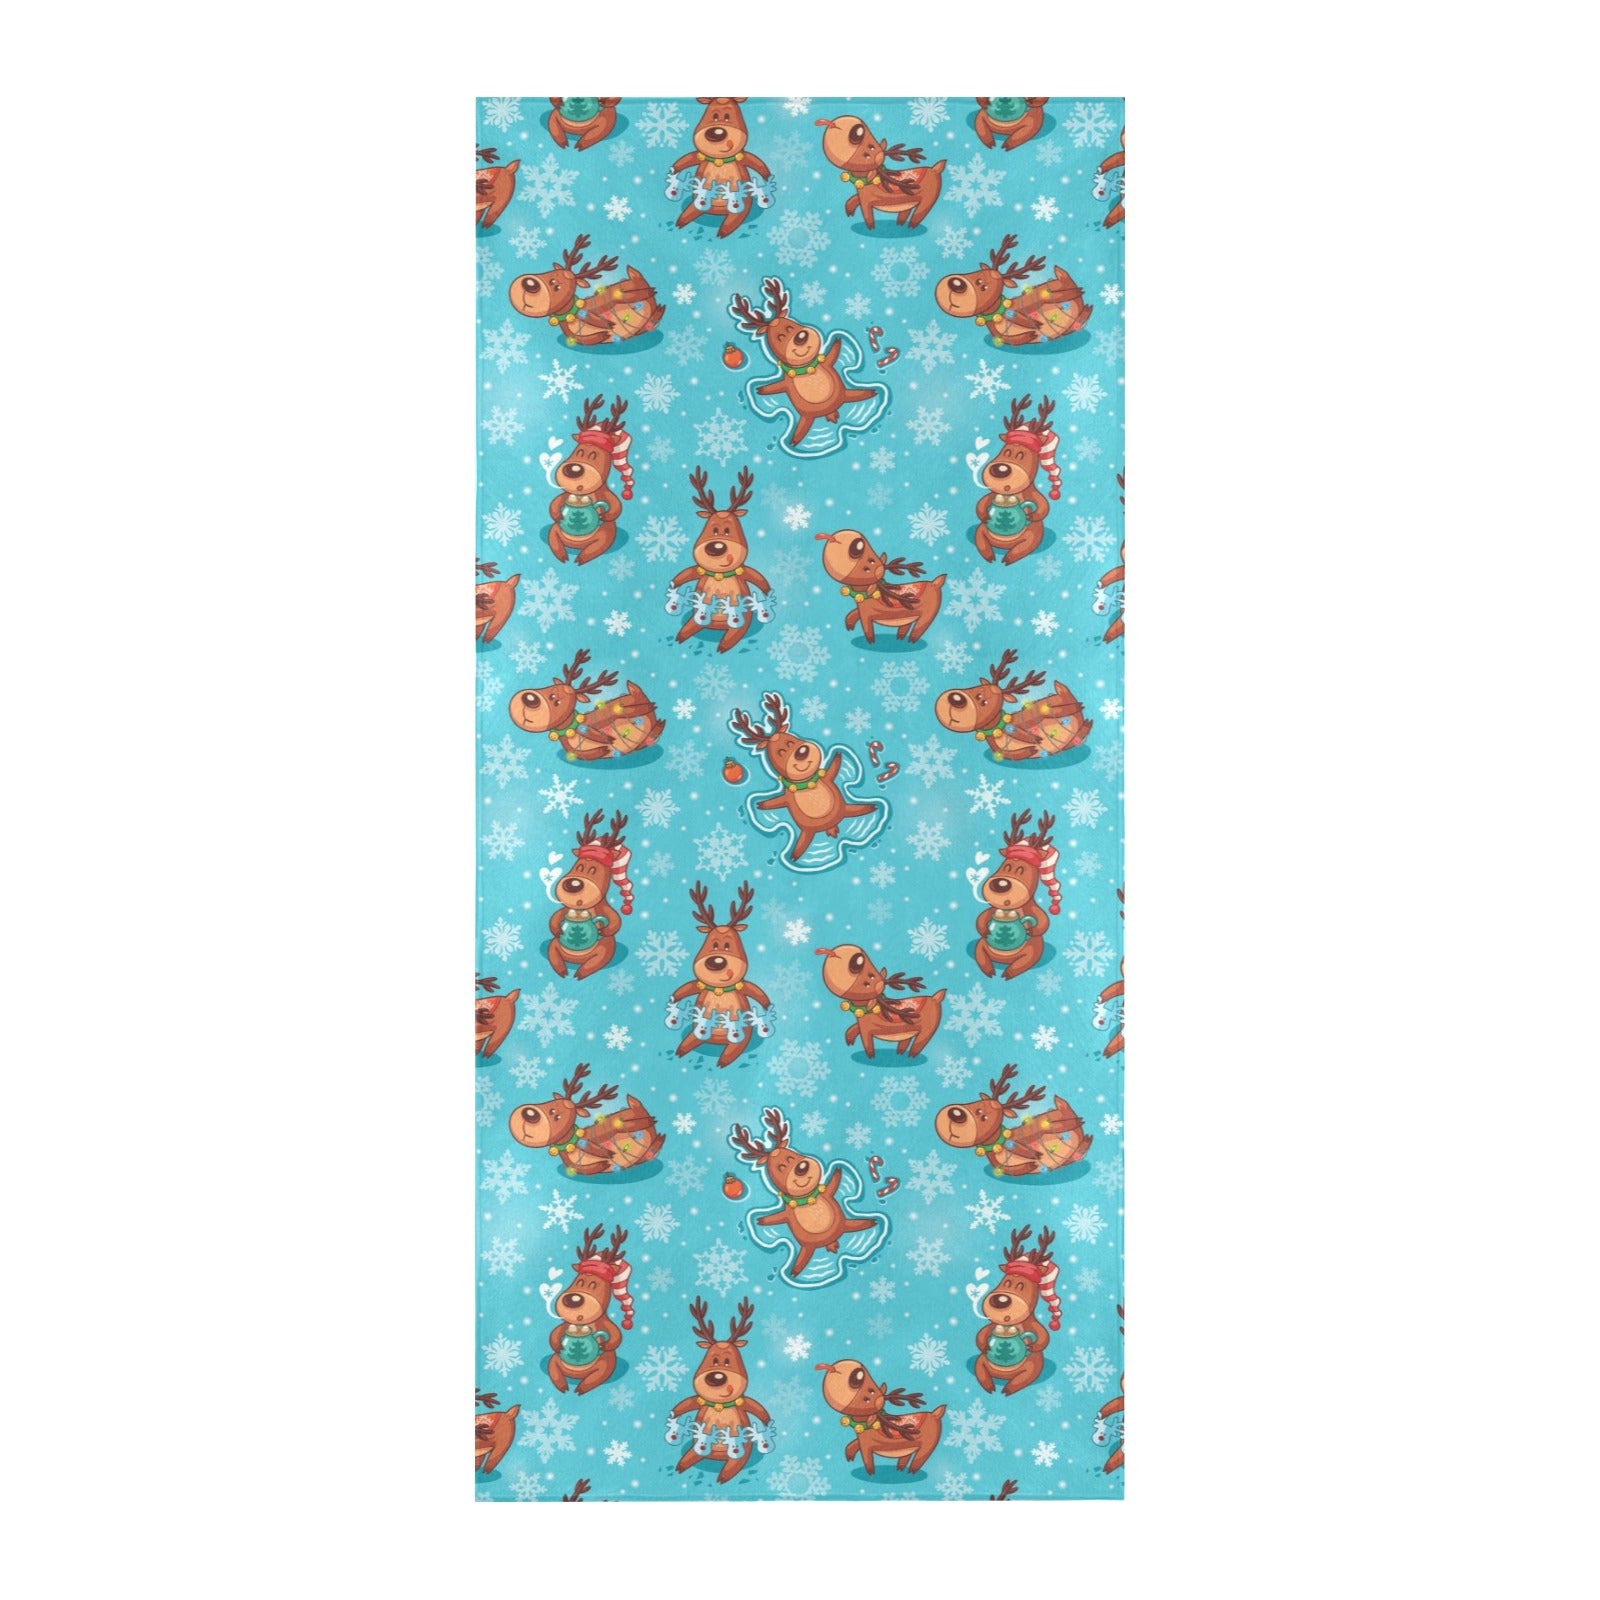 Reindeer Print Design LKS402 Beach Towel 32" x 71"